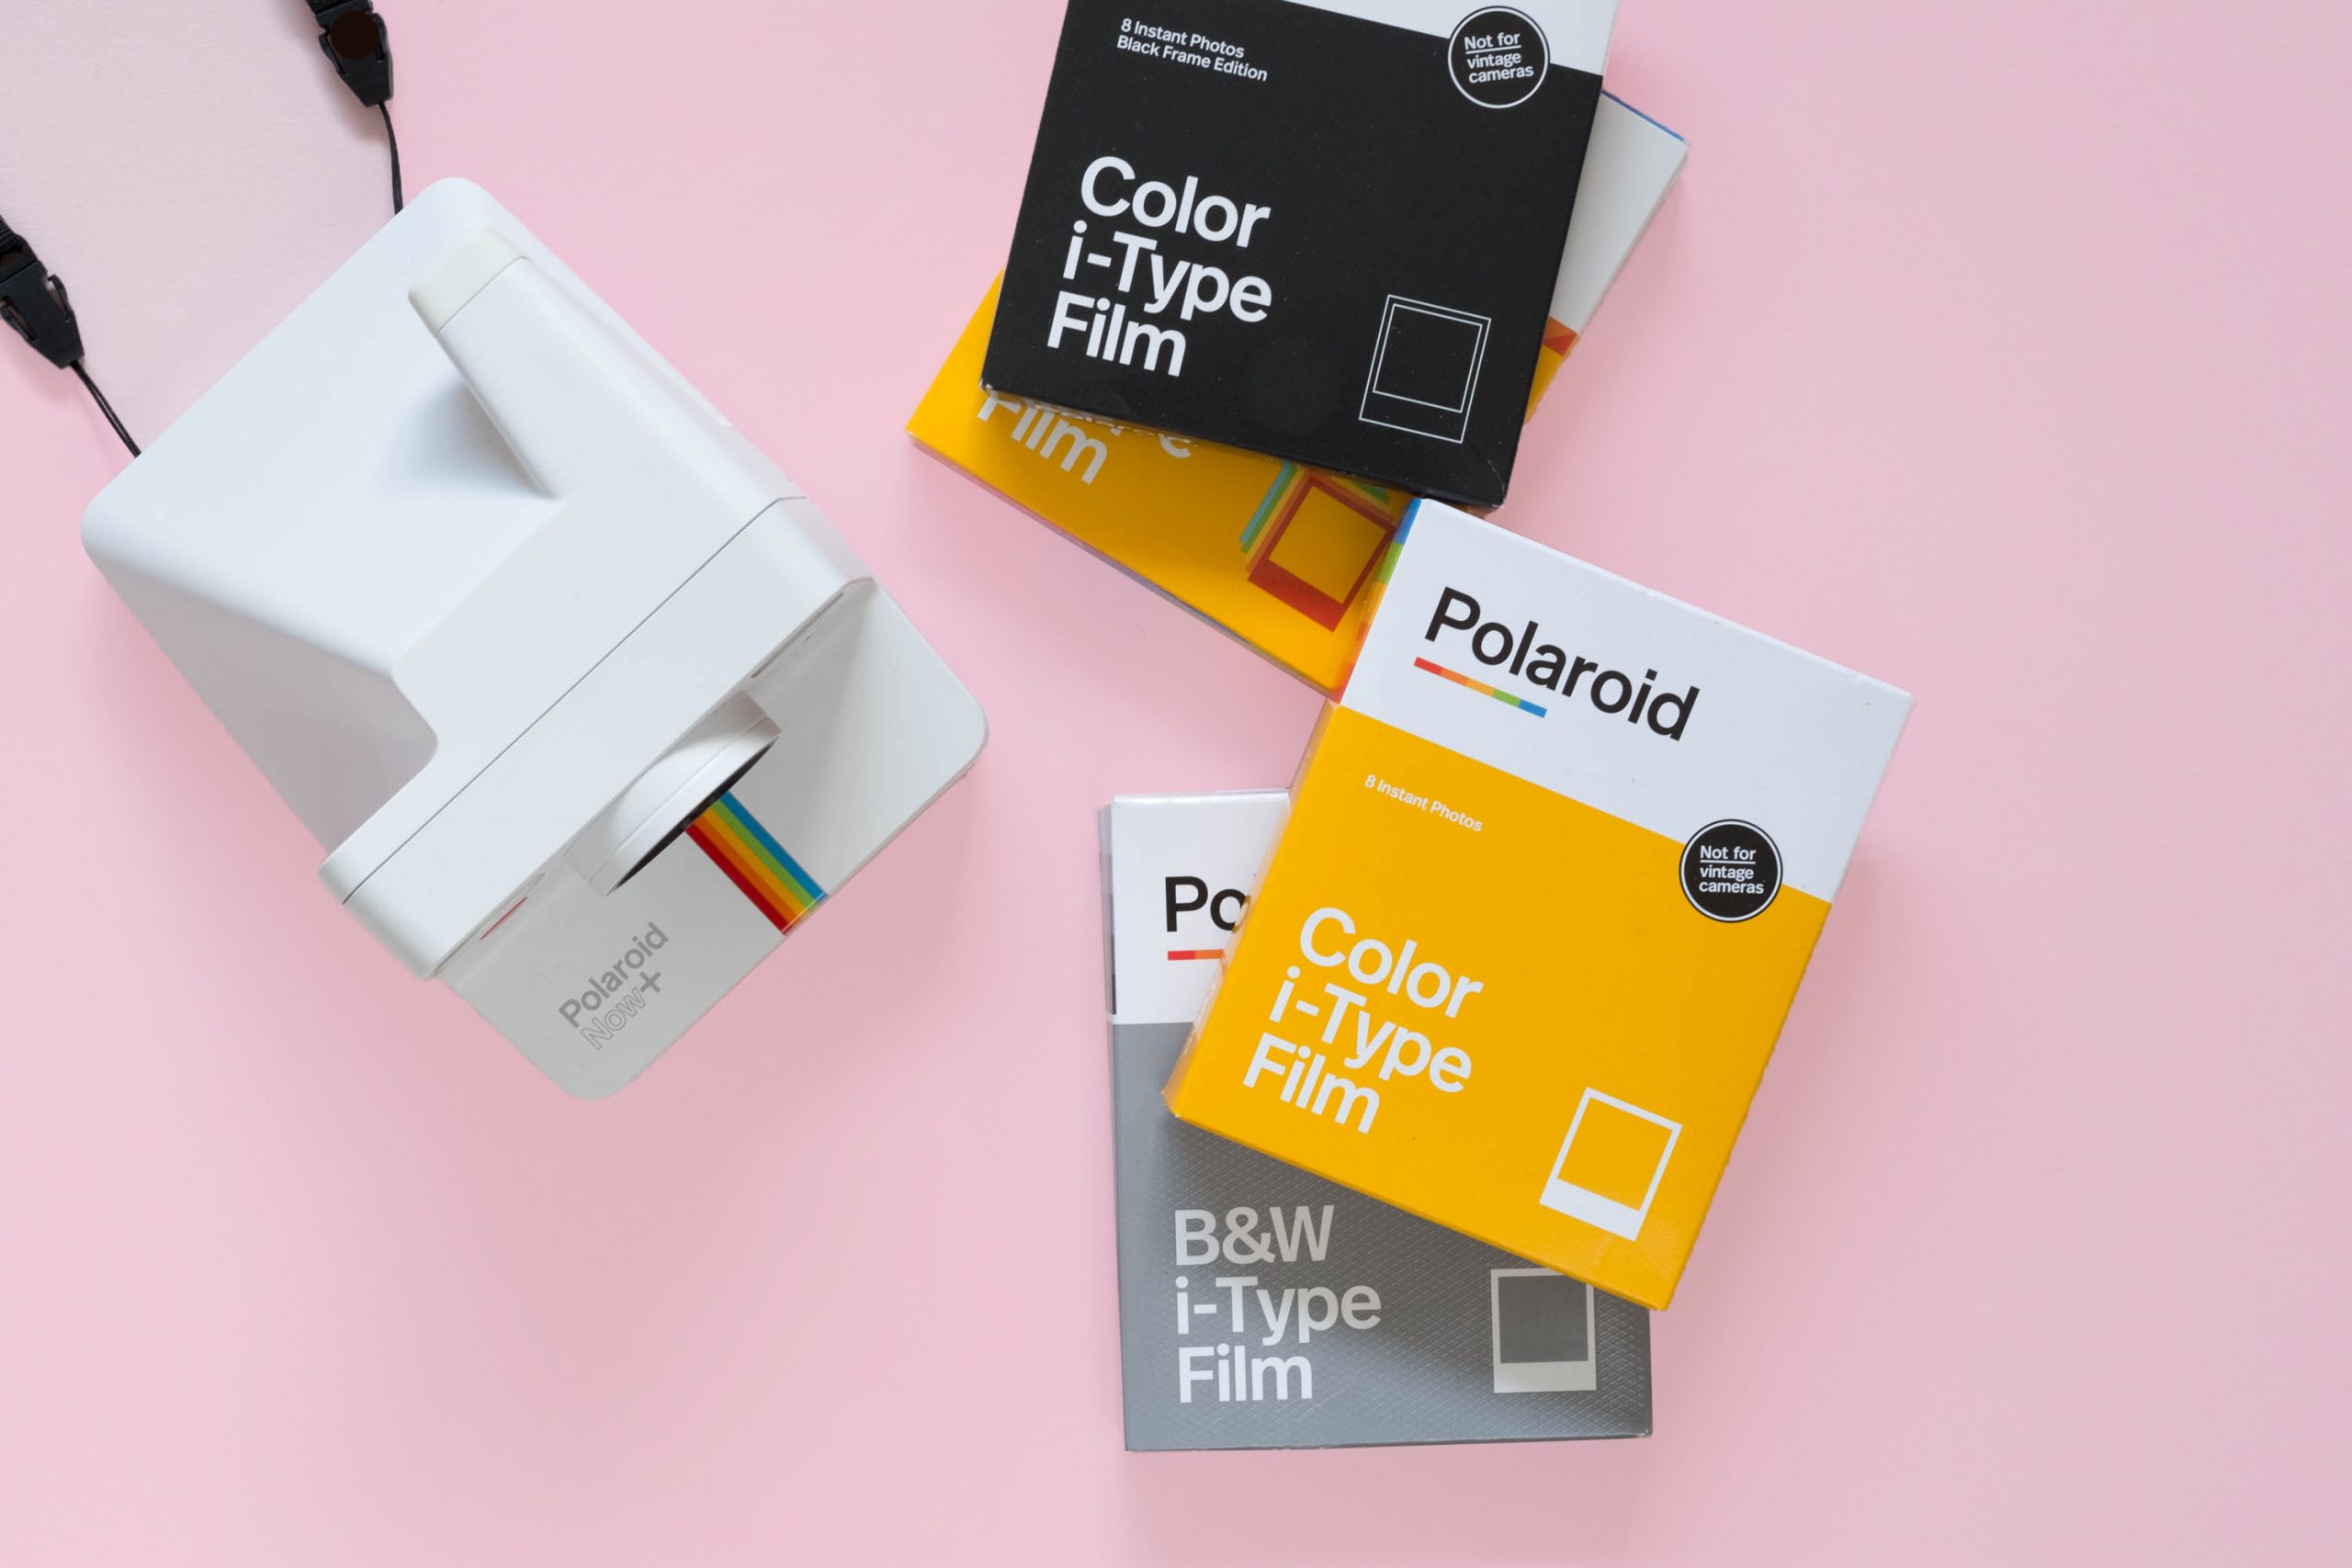 Polaroid Originals Color Film for GO Cameras, Black Frame Edition